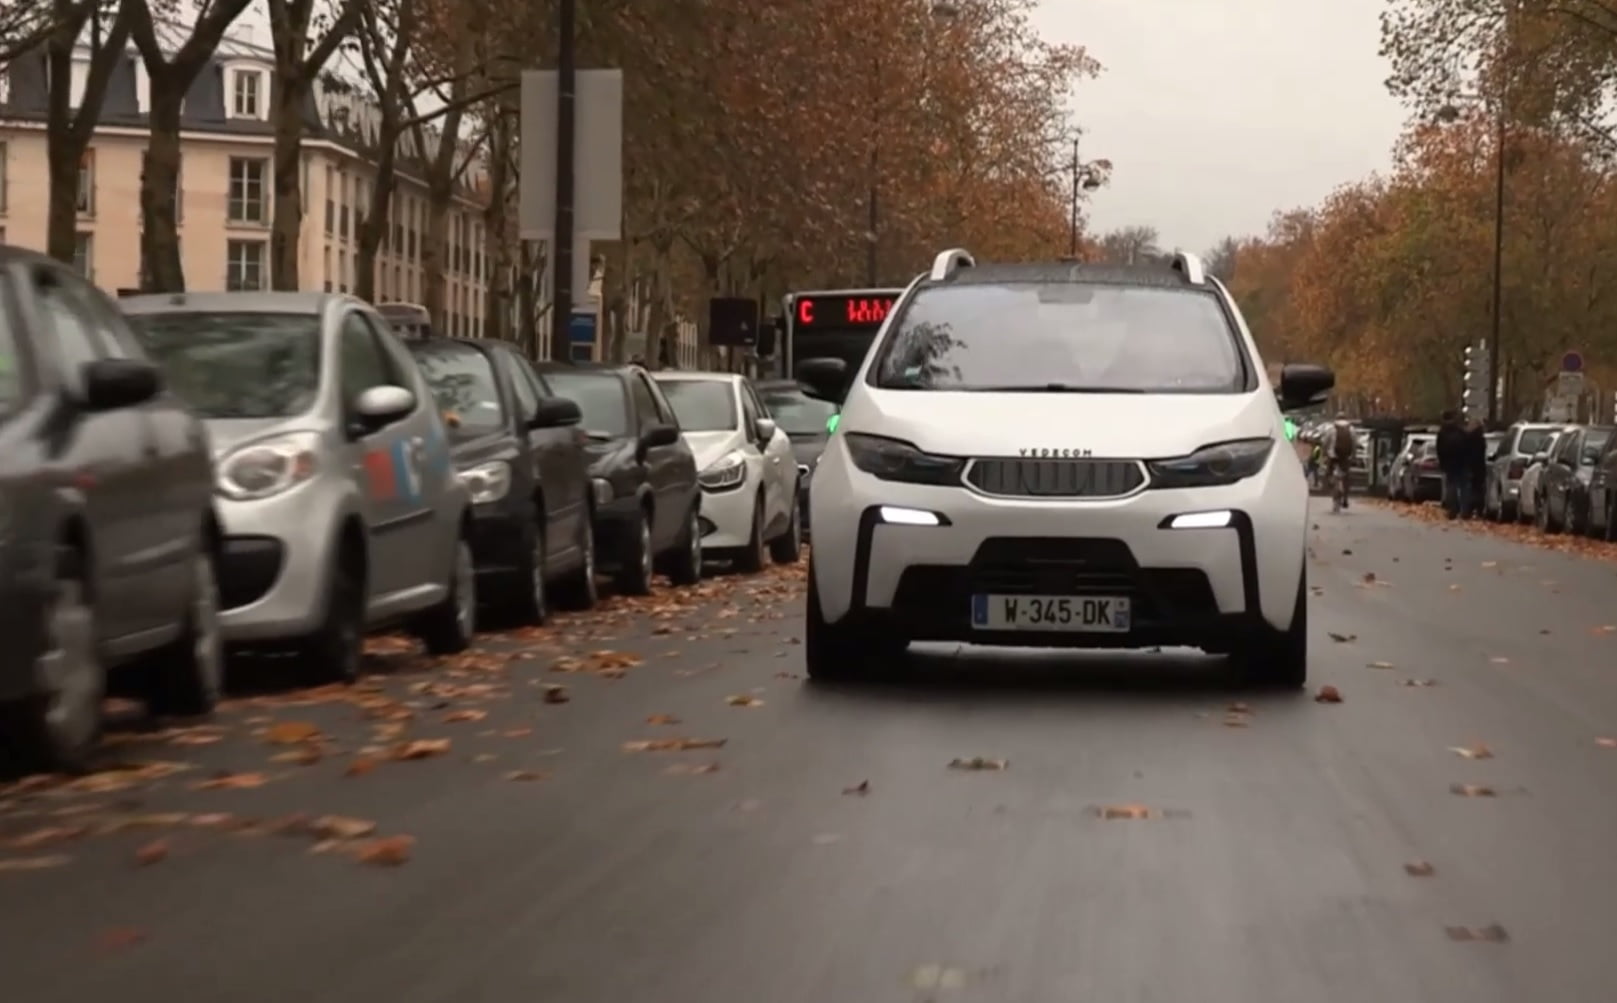 Vedecom'a autonomous car, driverless vehicle, courtesy https://vimeo.com/224297482